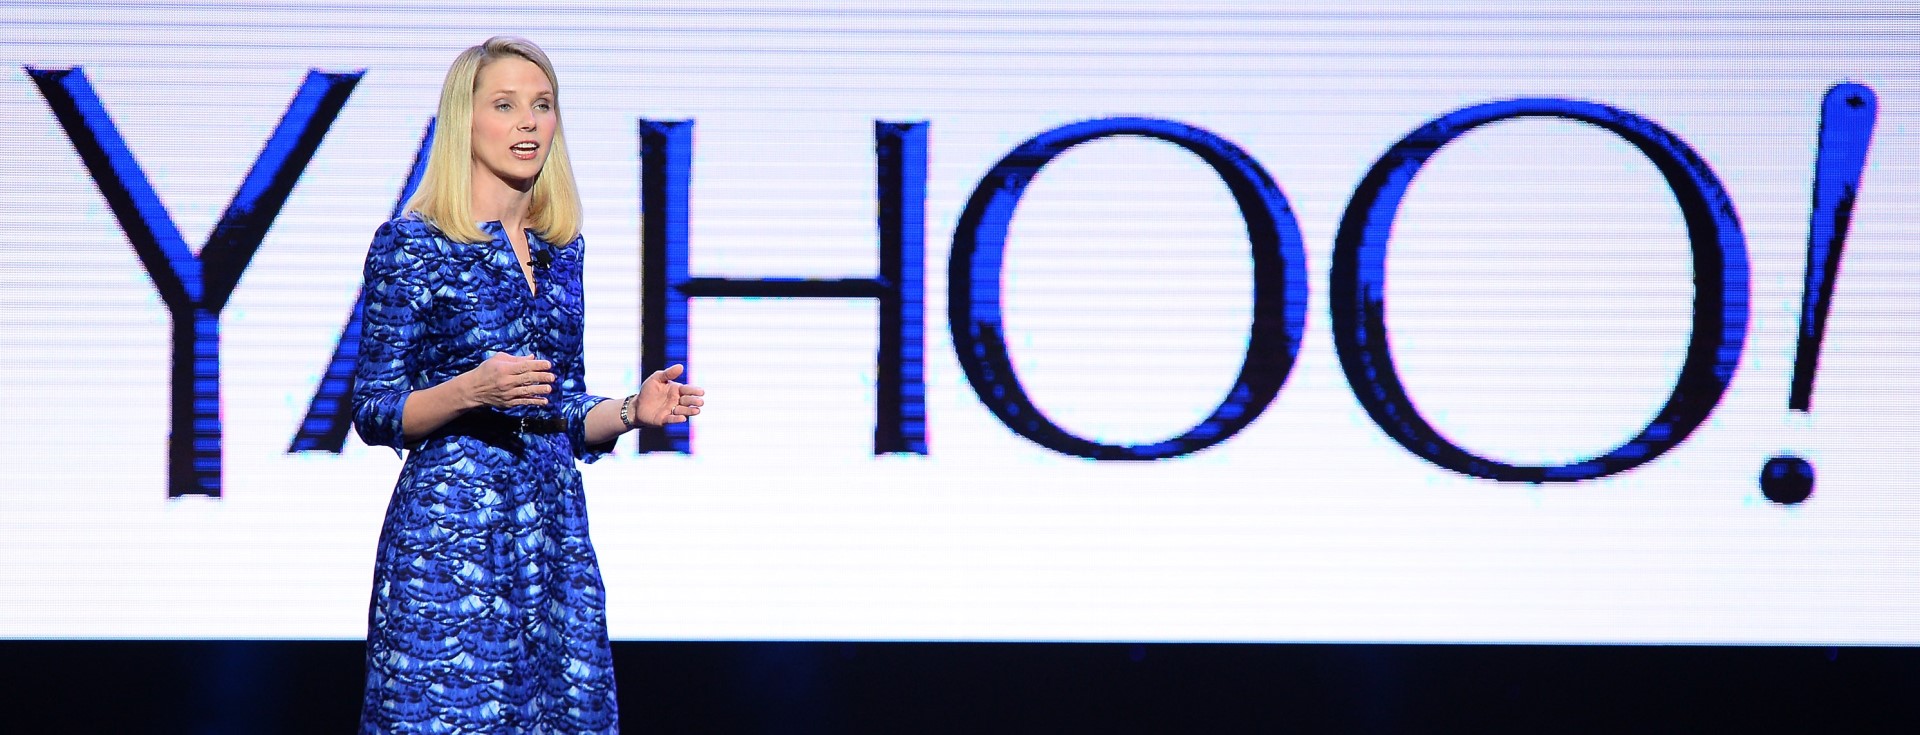 Yahoo CEO’su Marissa Mayer’in CV’si